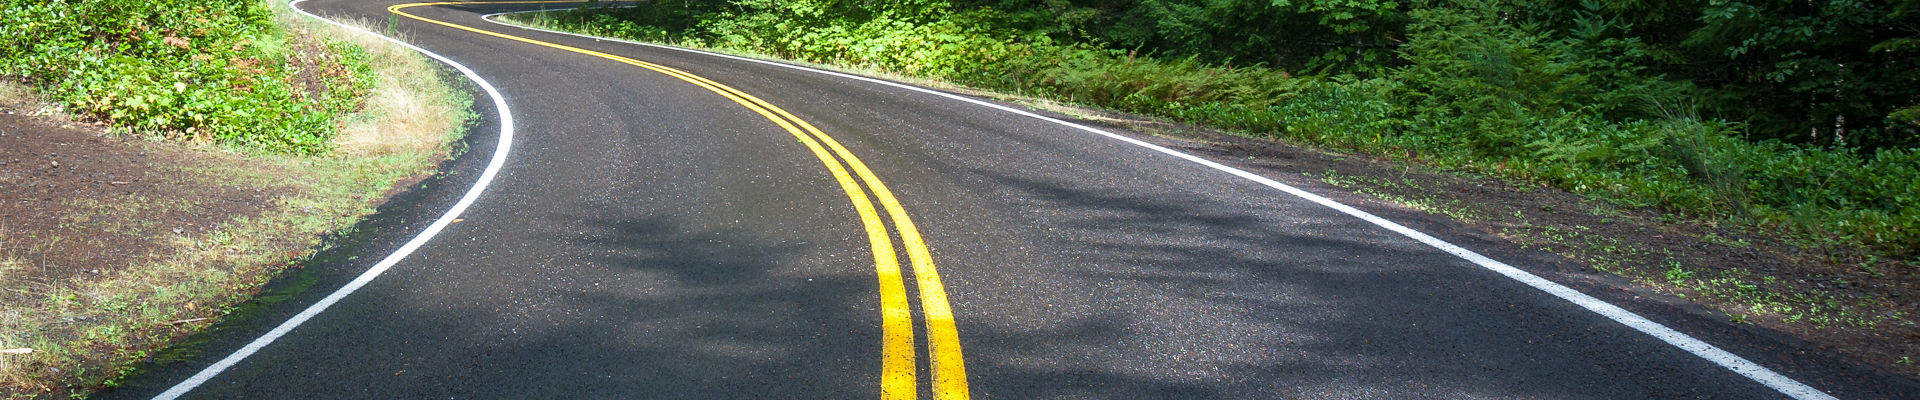 Pavimento de asfalto preto sinuoso com marcas amarelas de estrada no meio da floresta de pinheiros